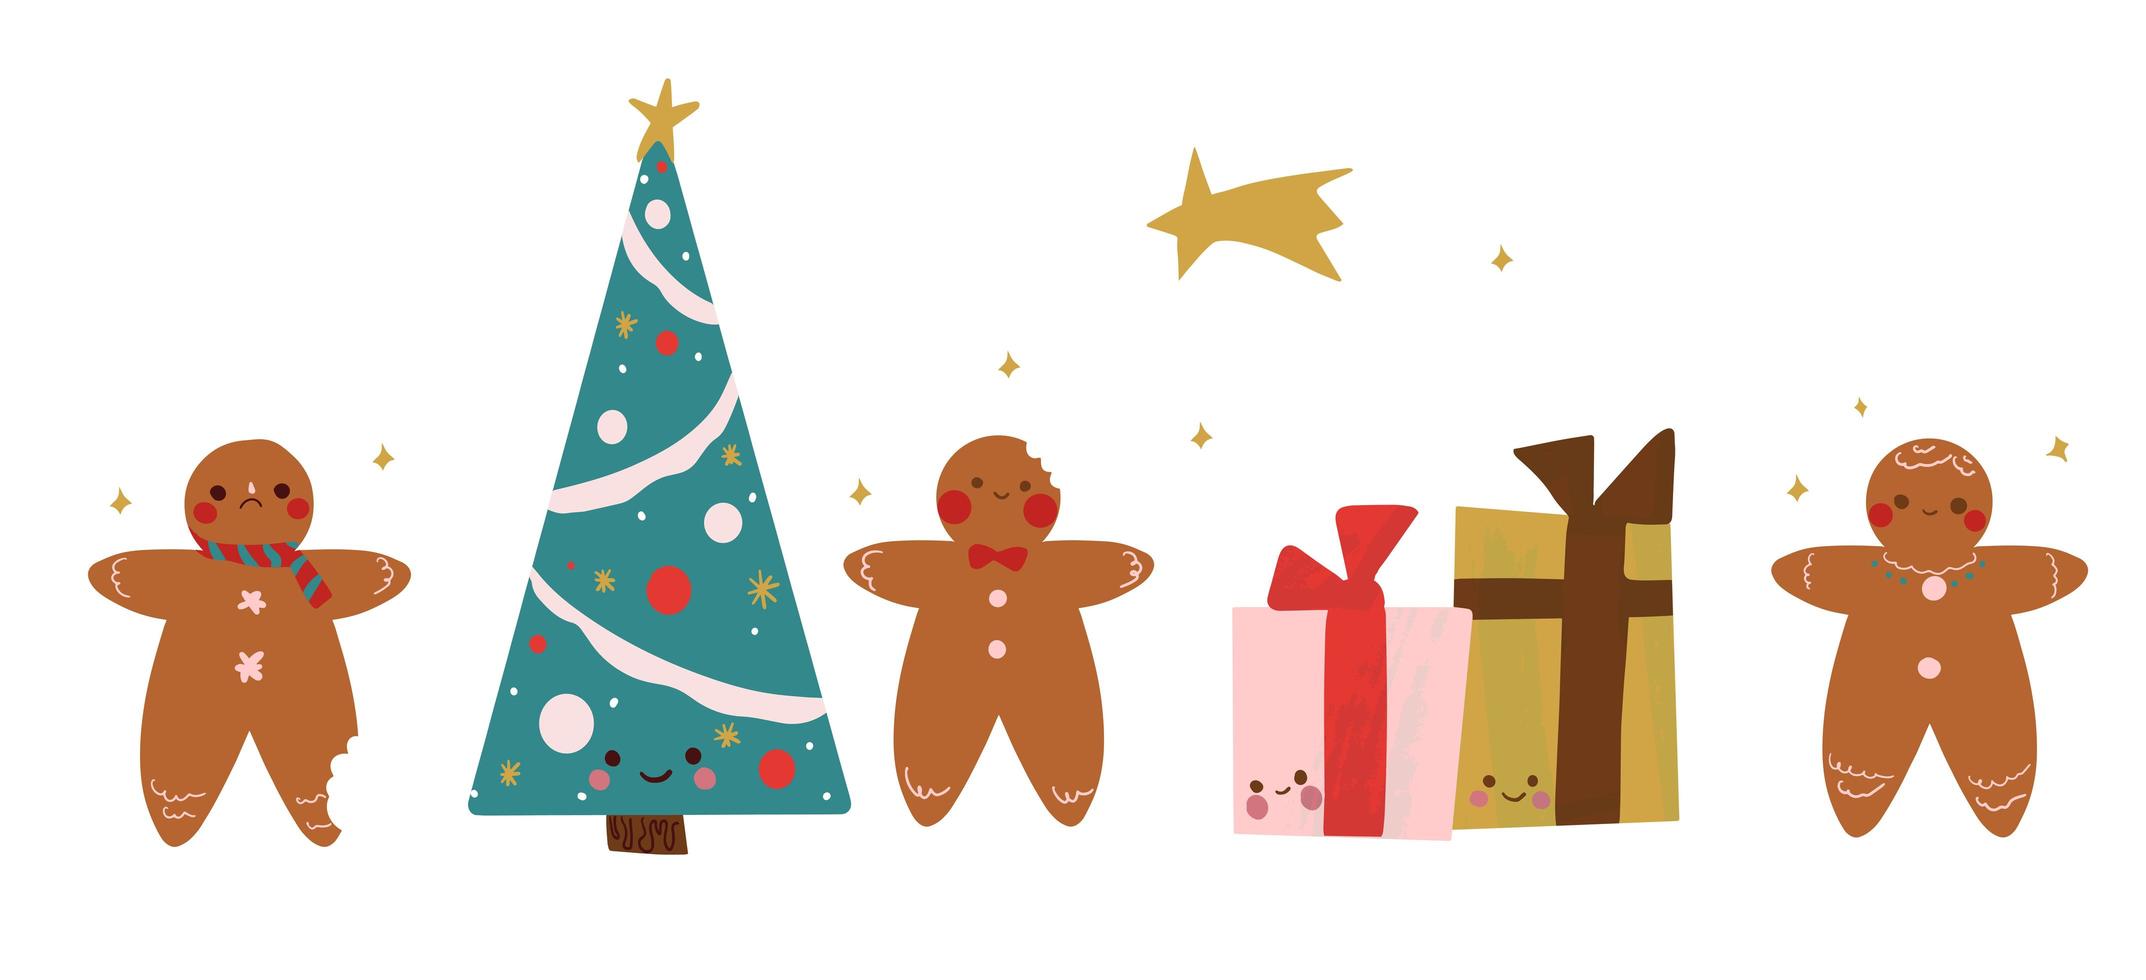 pan de jengibre dibujado a mano, regalos y árbol de navidad vector